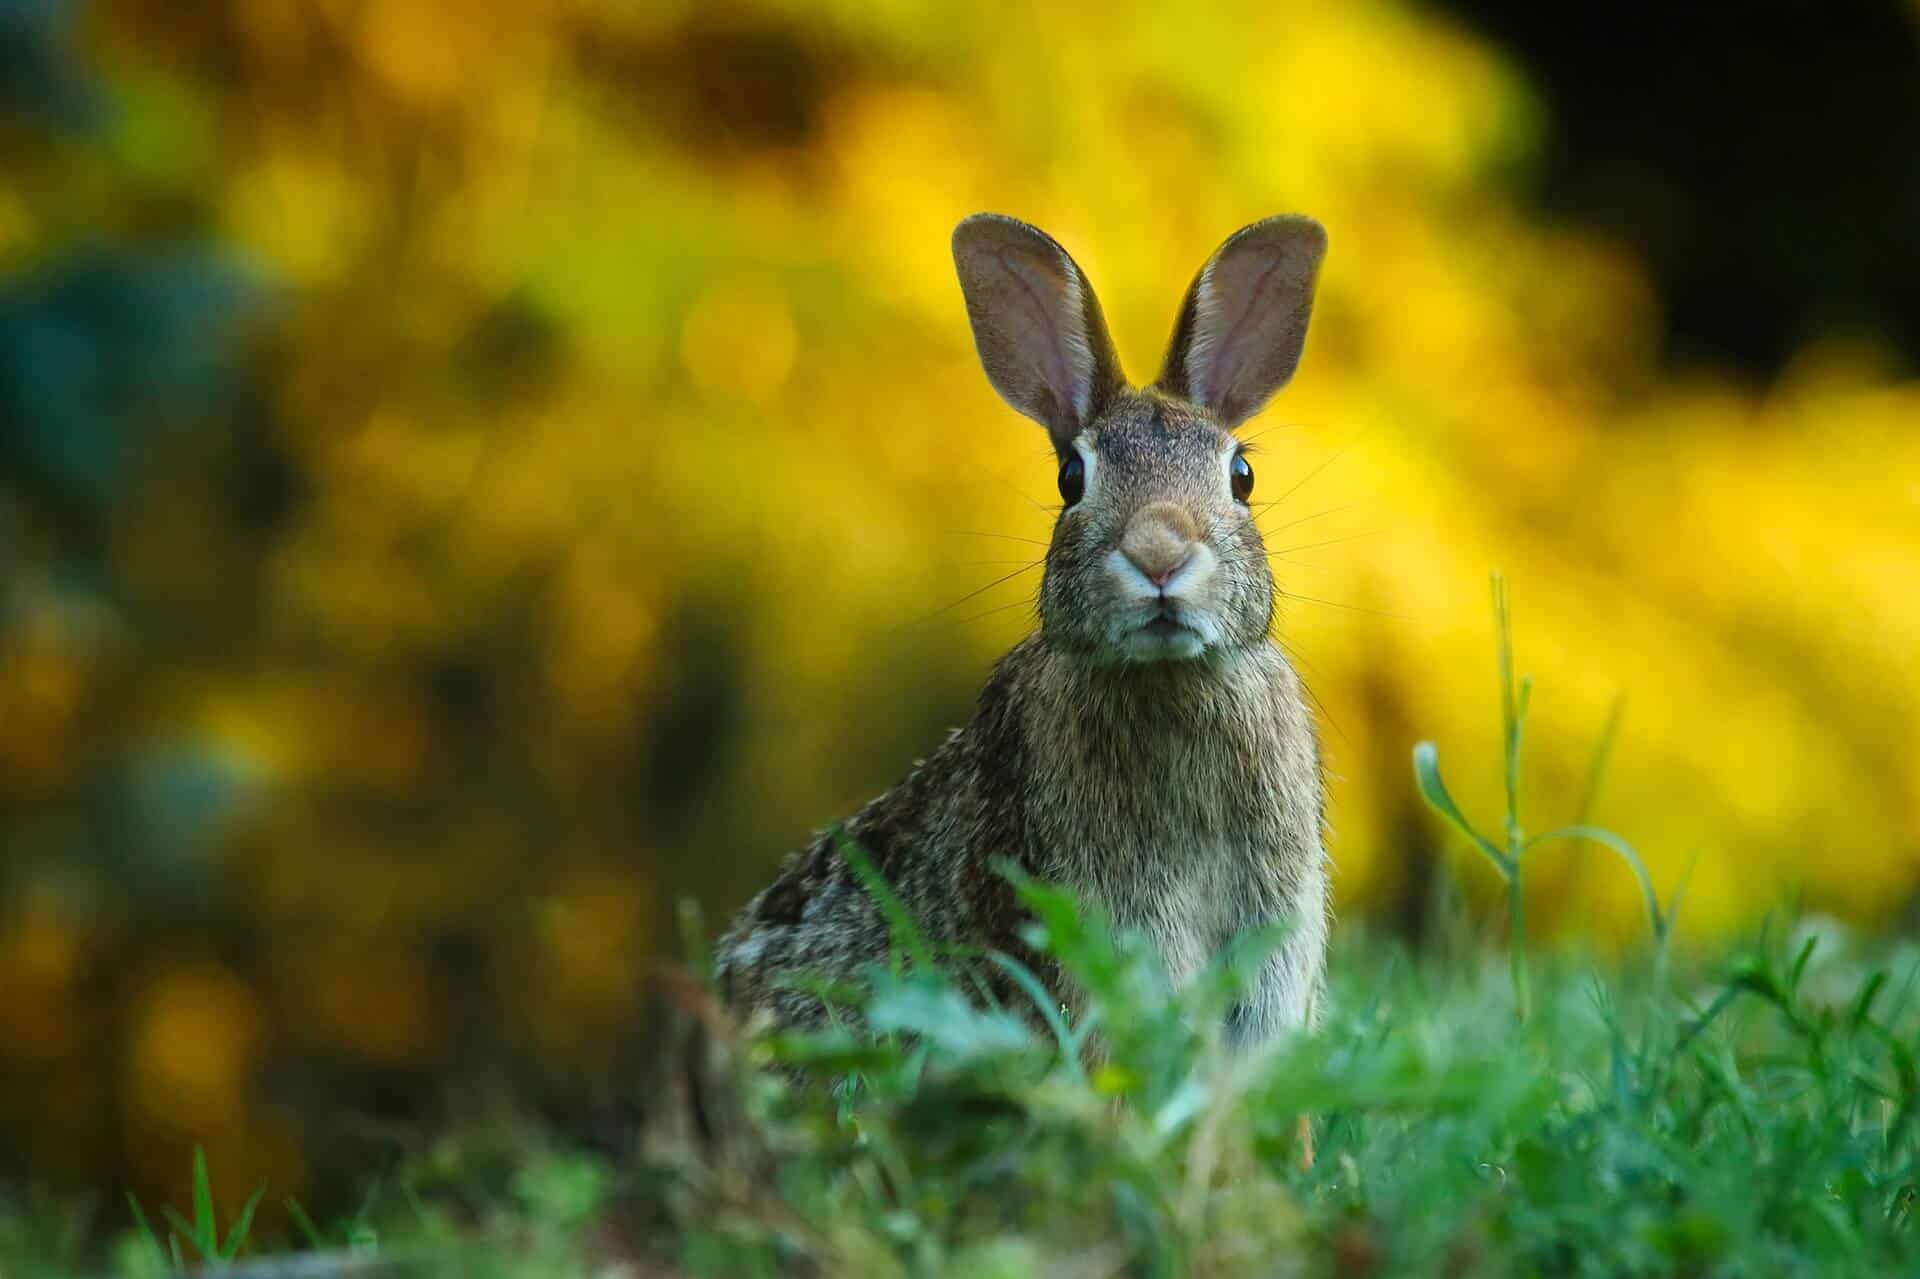 Najbizarnejšie zákony sveta - rabbit 1882699 1920 - Najbizarnejšie zákony sveta